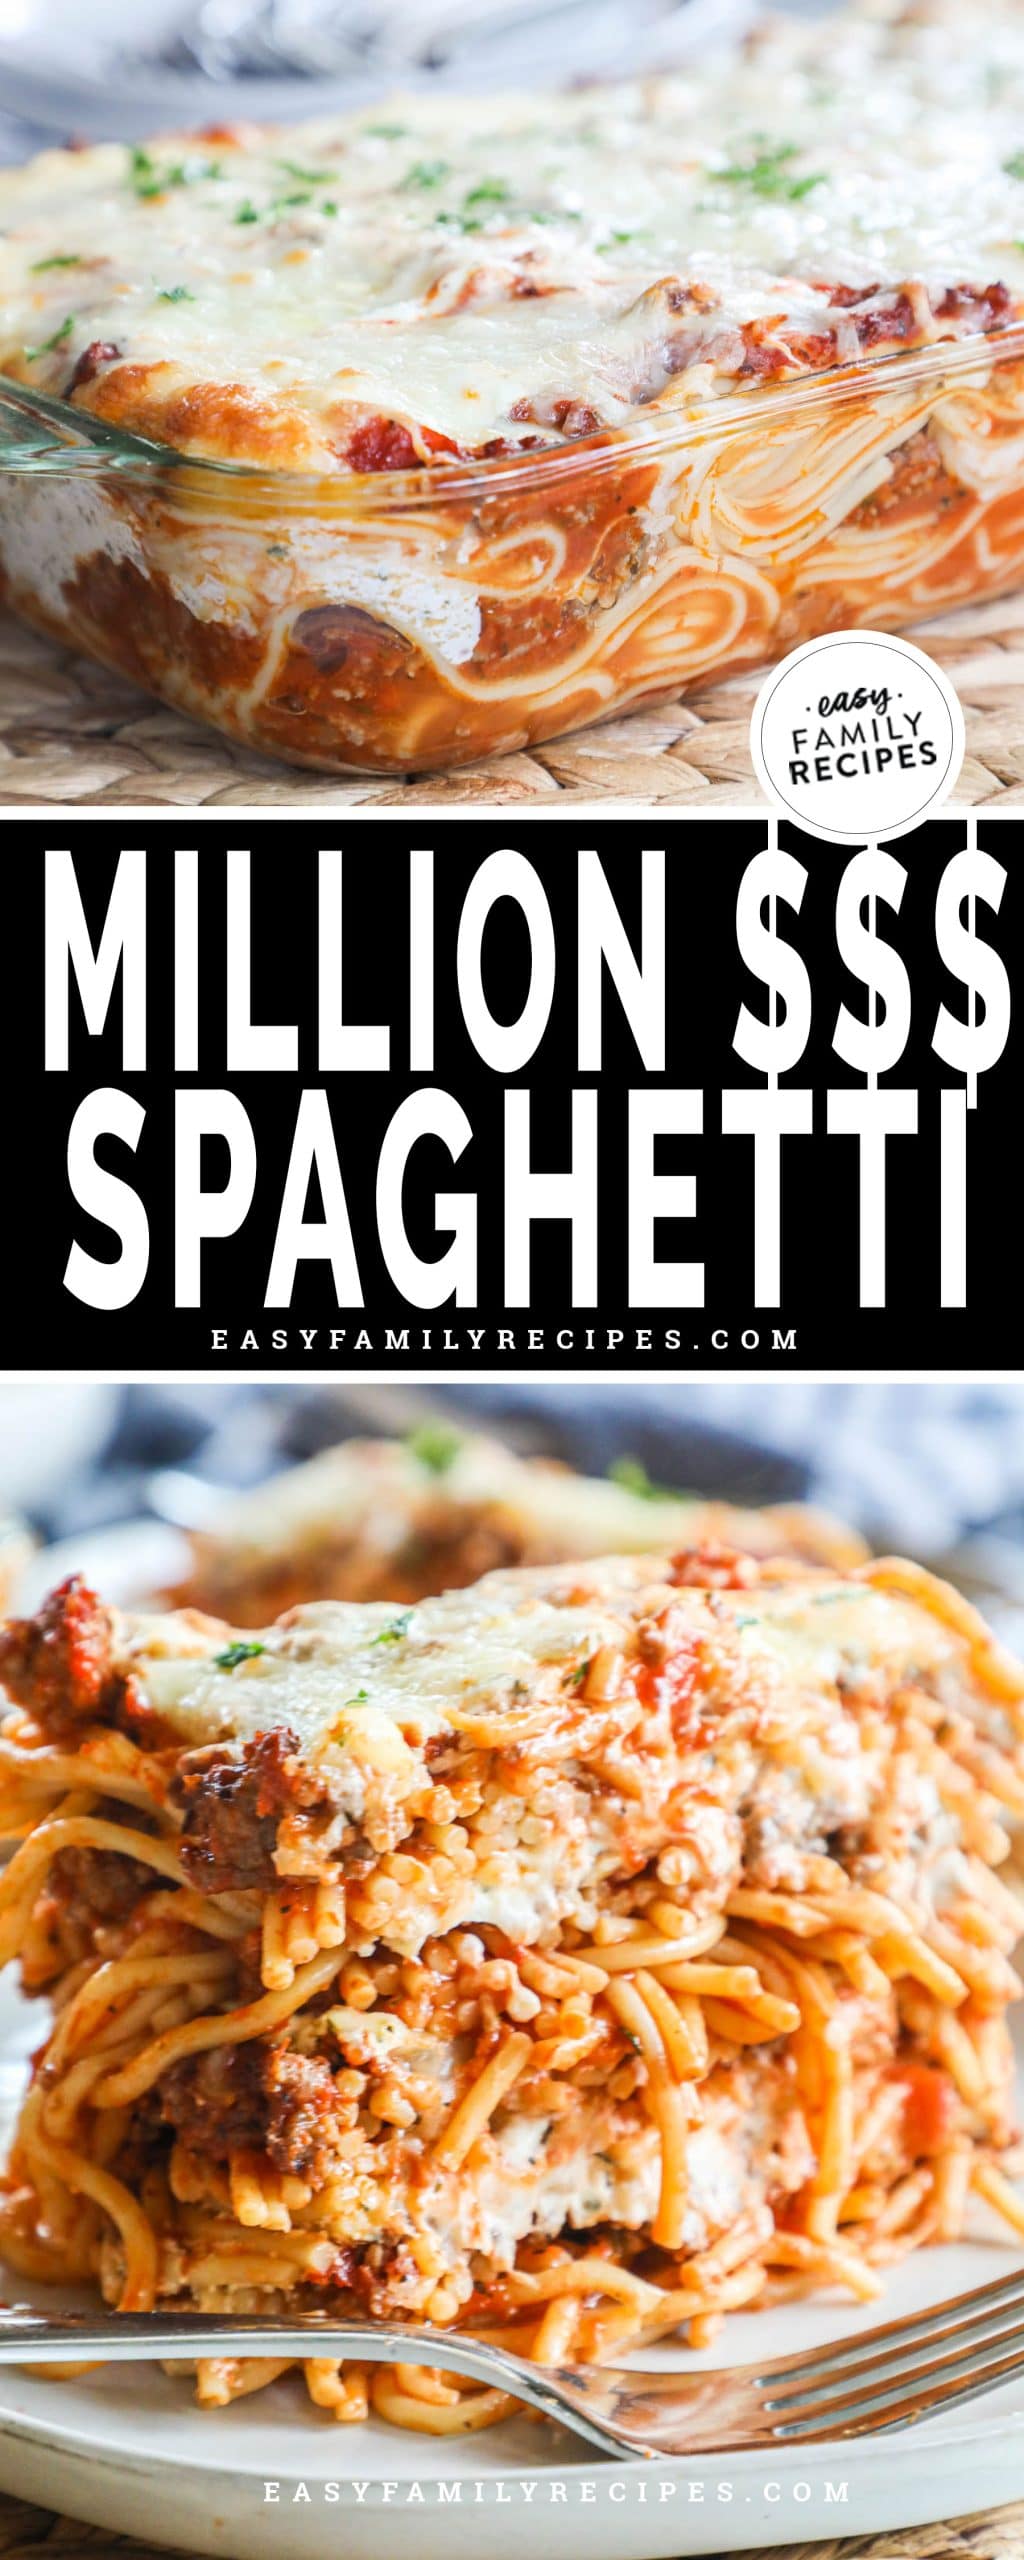 Million Dollar Spaghetti recipe baked in a casserole dish